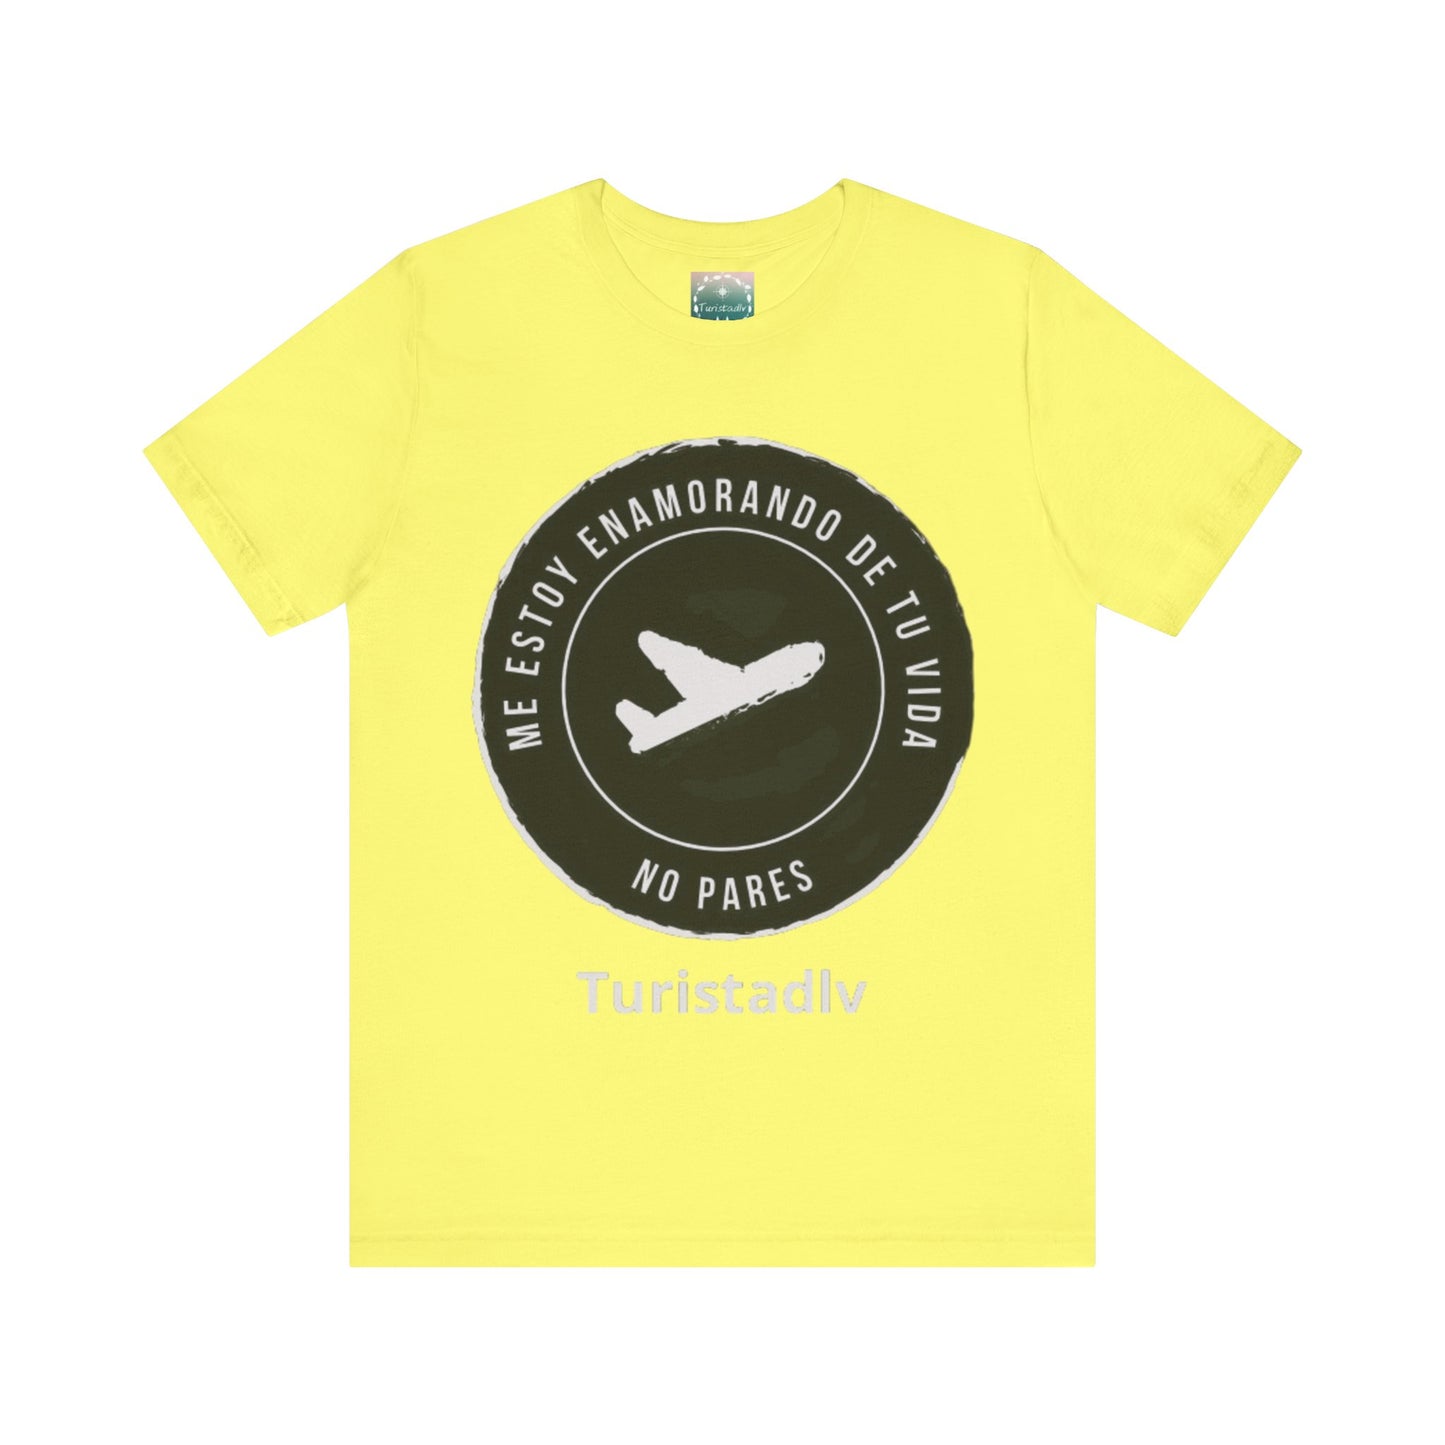 Camiseta de avión, camiseta de piloto, camisa de viajero, camiseta inspiradora, camiseta de viajero, regalo viajero, aviación, camisa viaje.